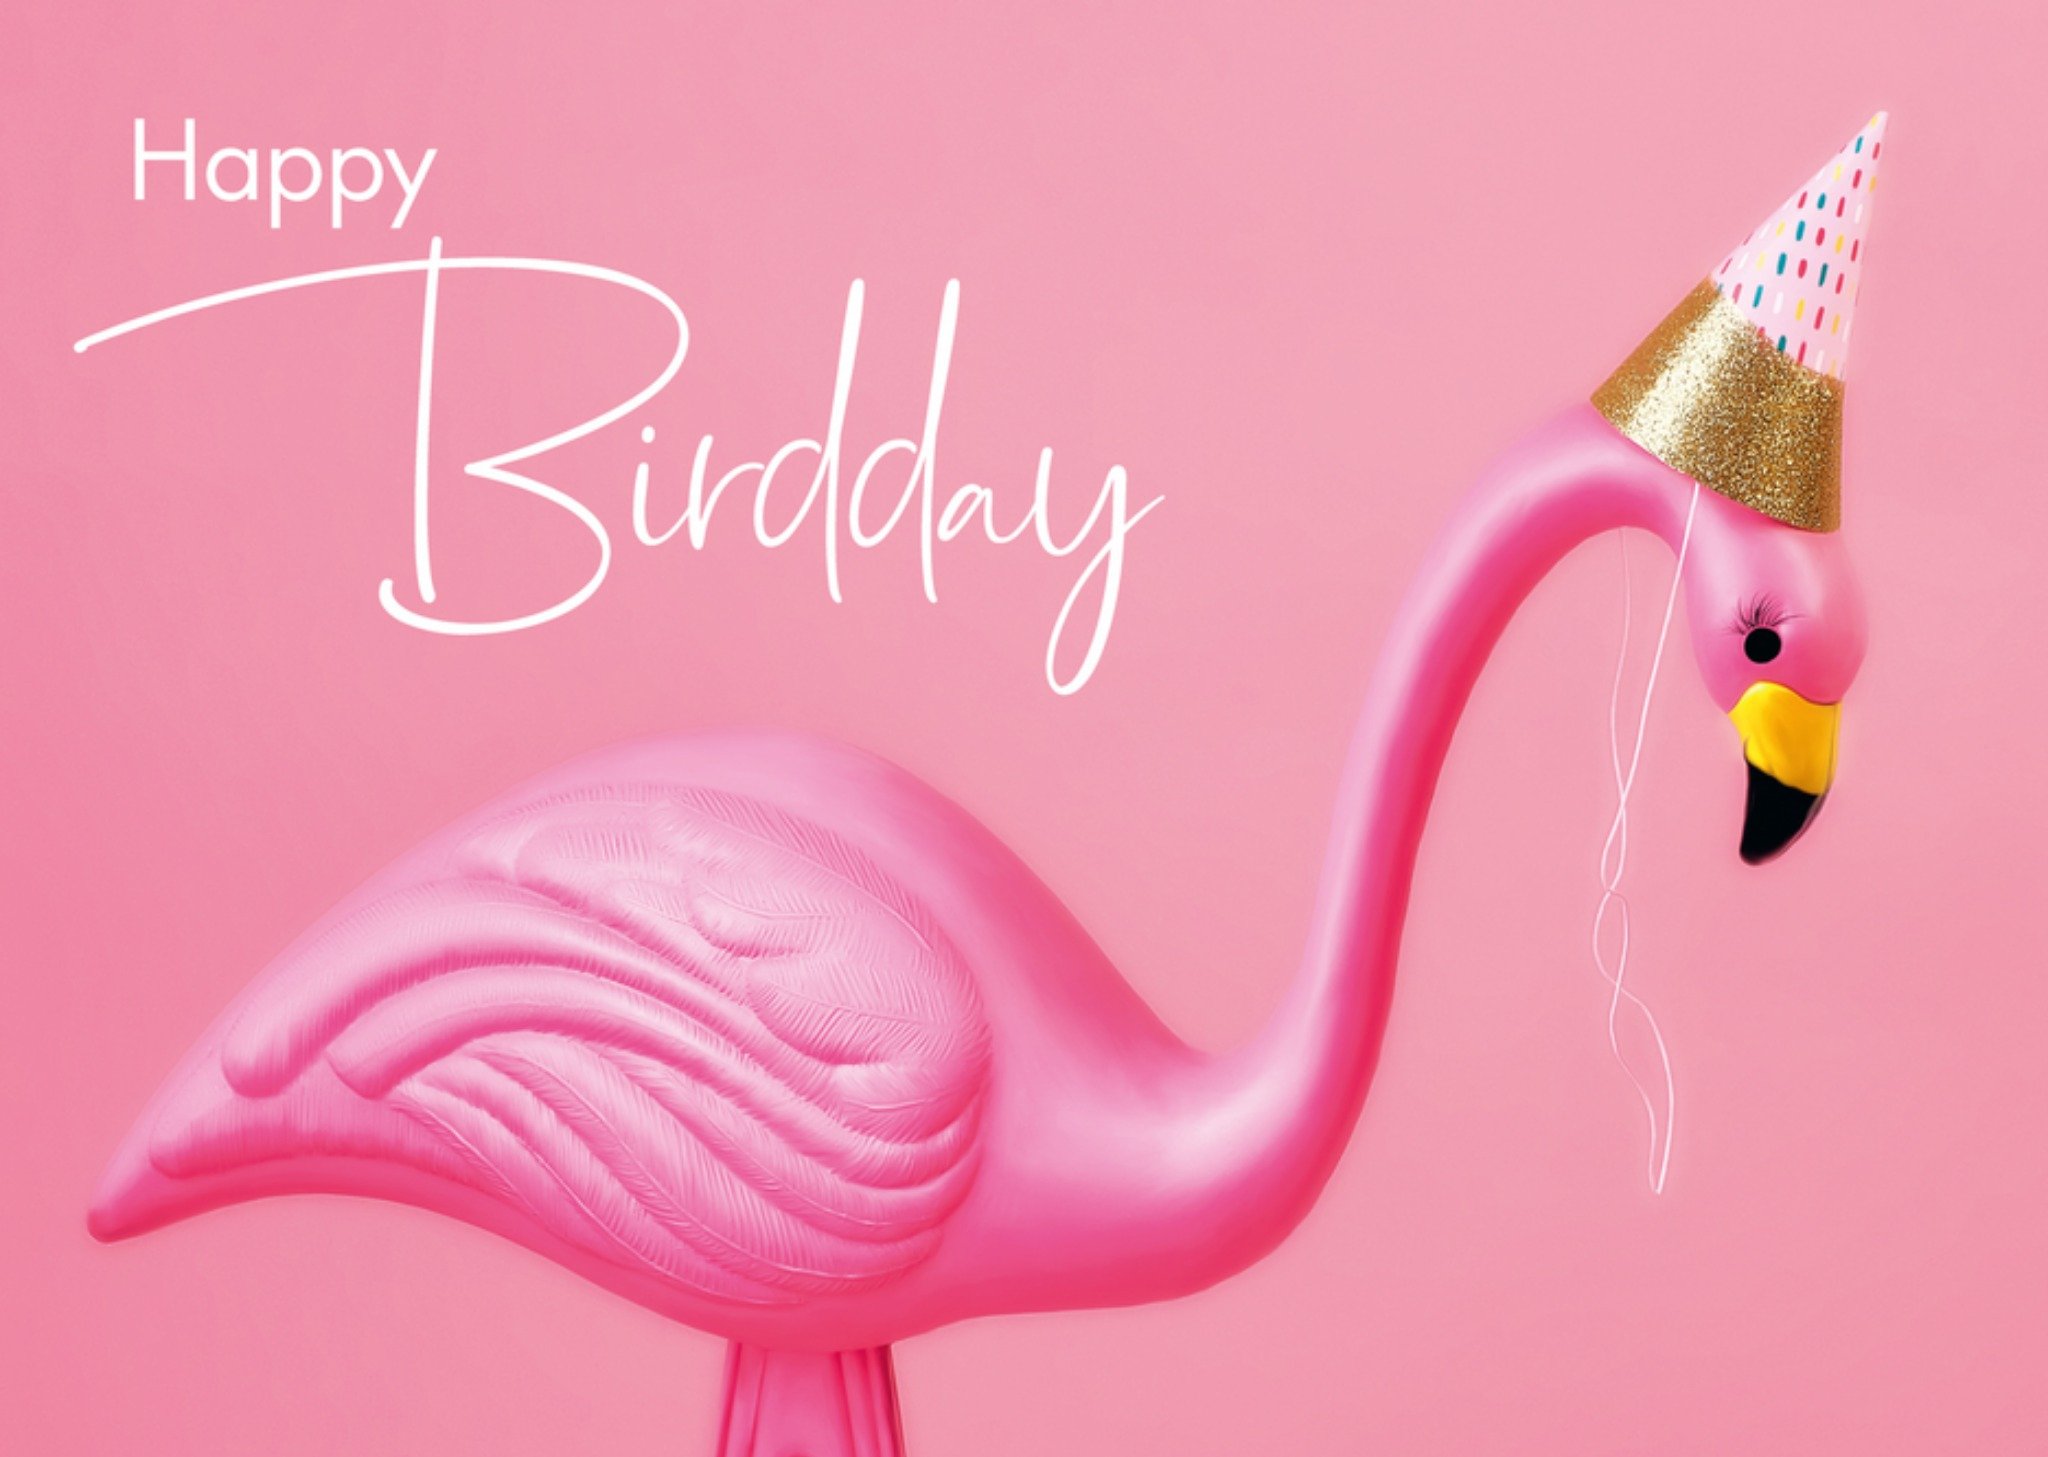 Paperclip - Verjaardag - Happy Birdday